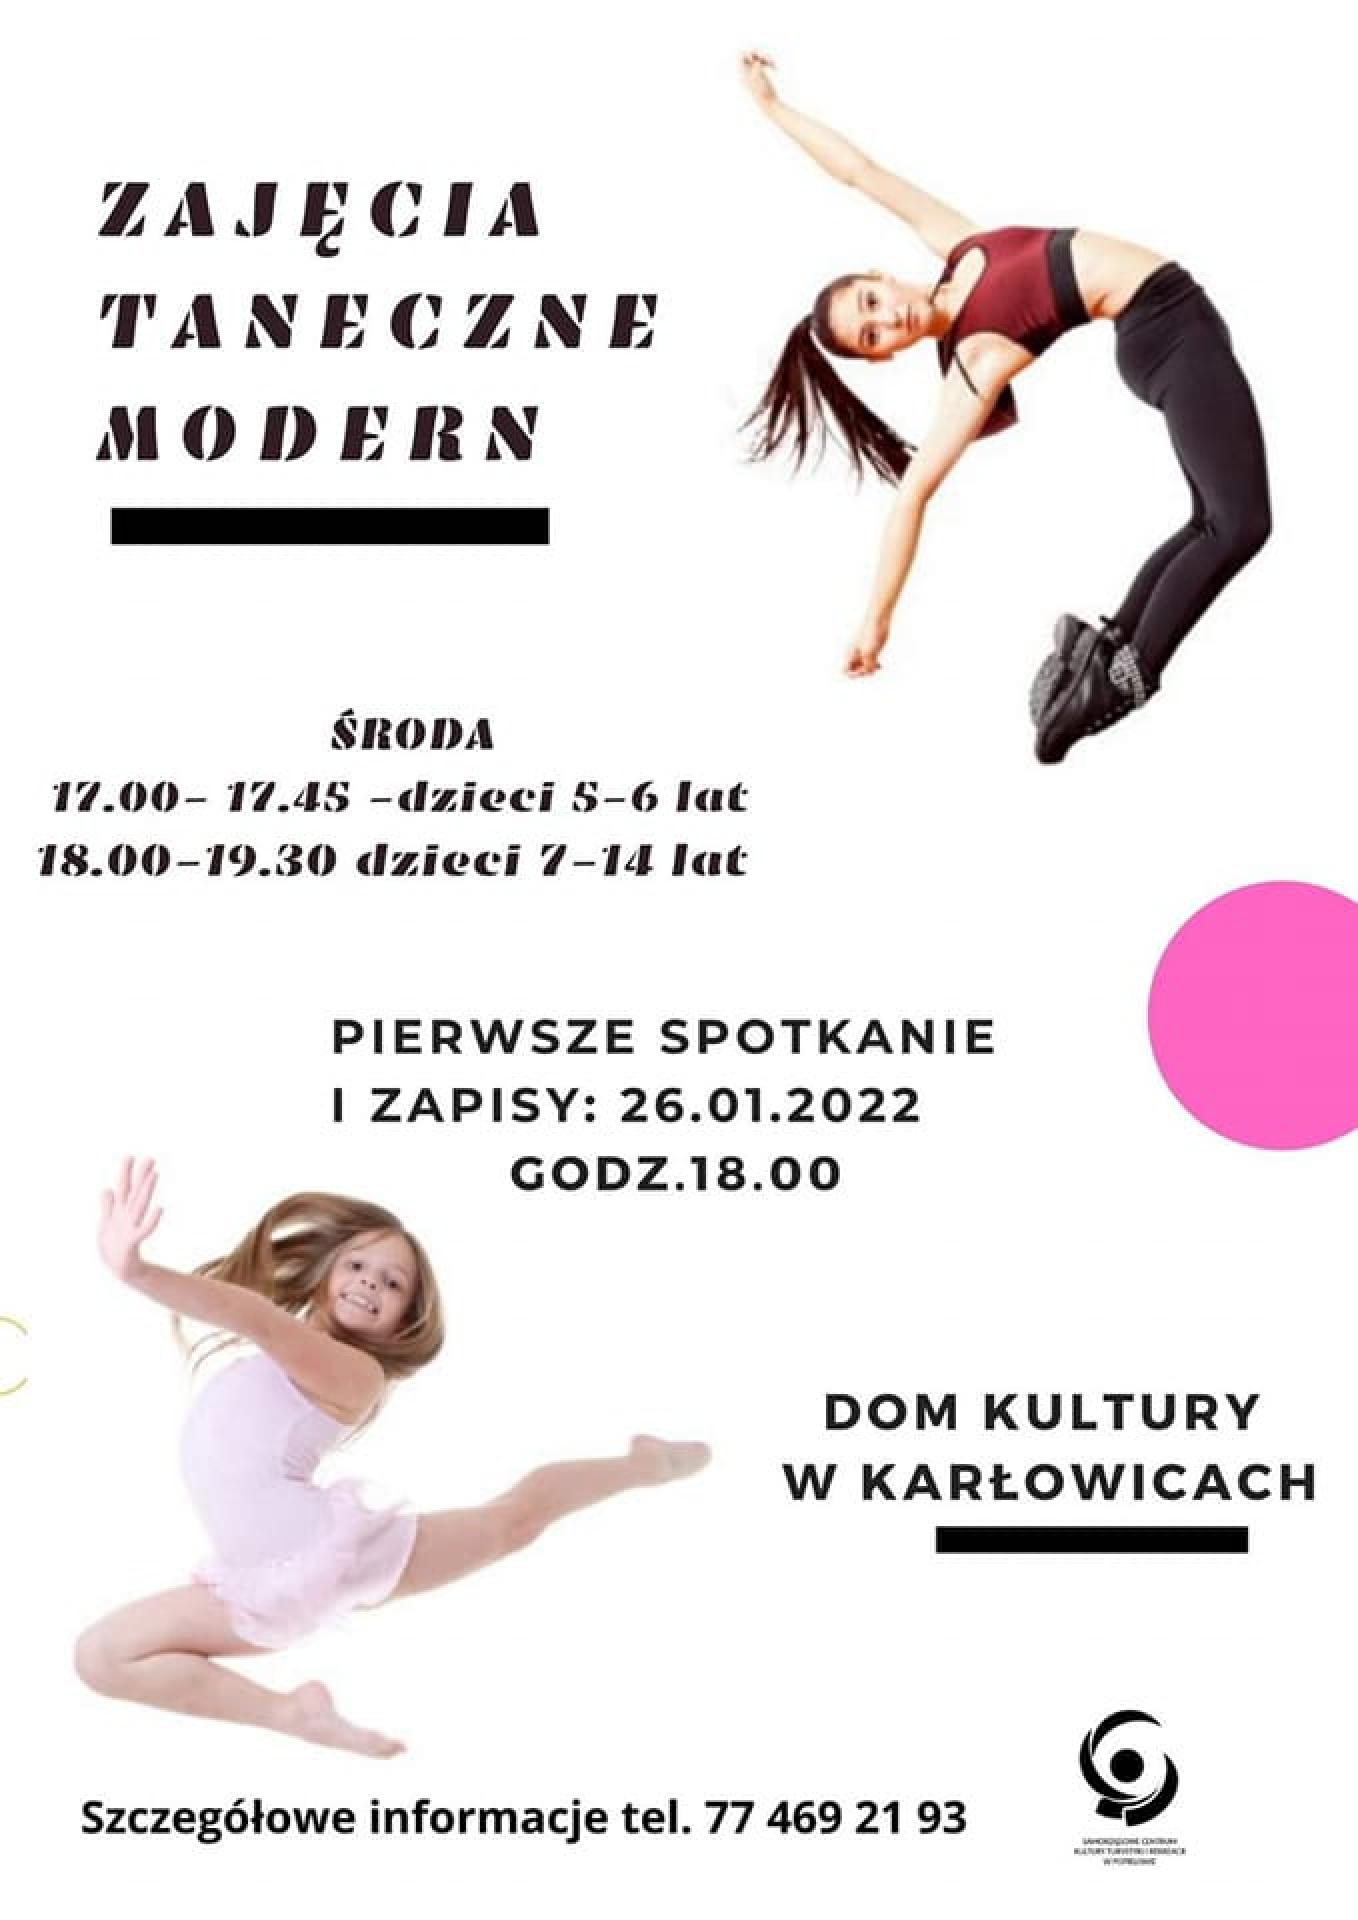 Zajęcia taneczne modern w Karłowicach